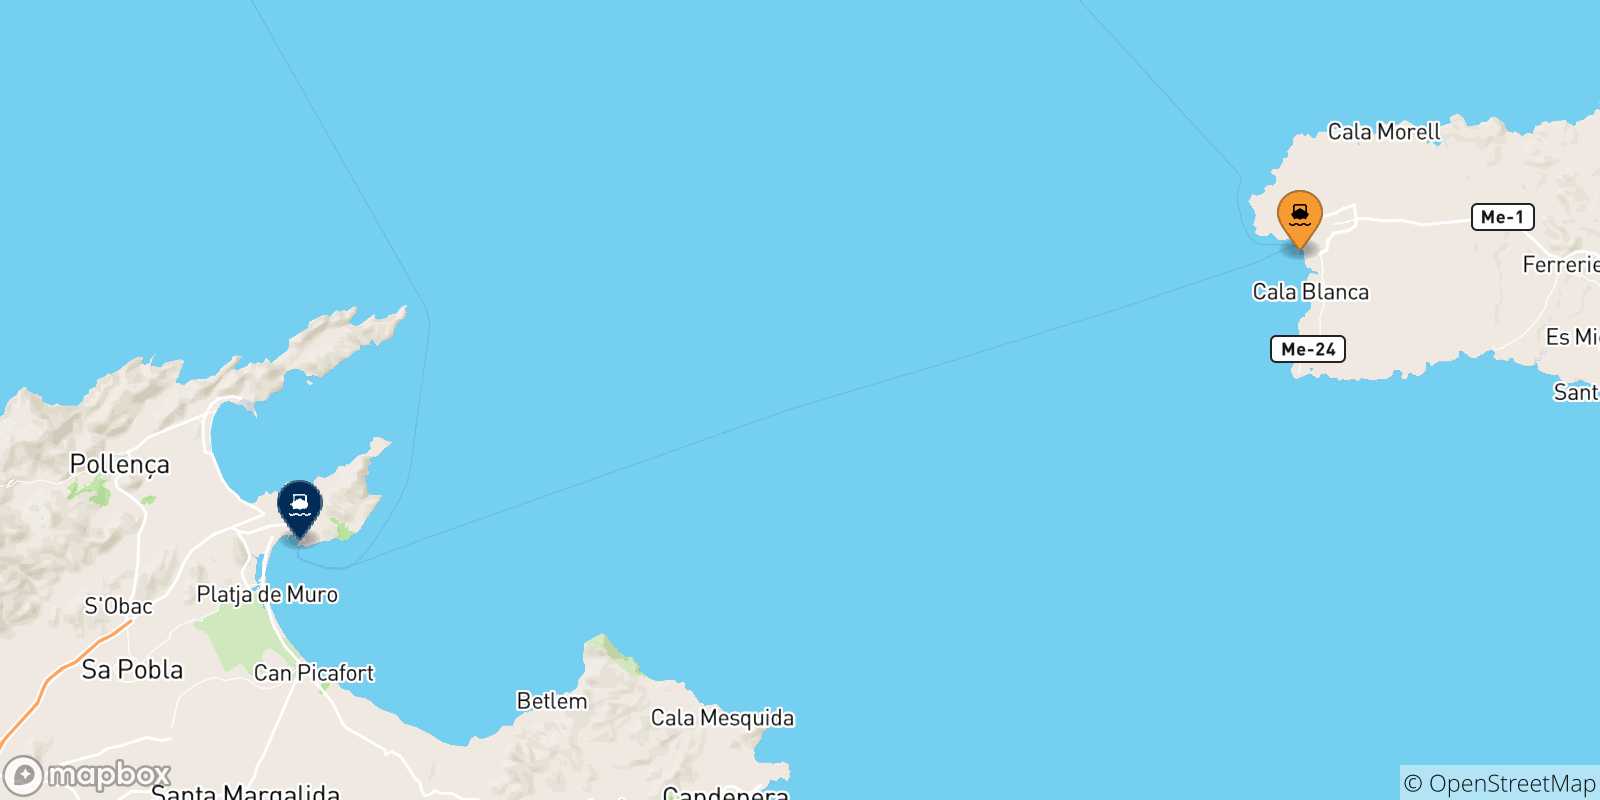 Mappa delle possibili rotte tra Ciutadella (Minorca) e le Isole Baleari